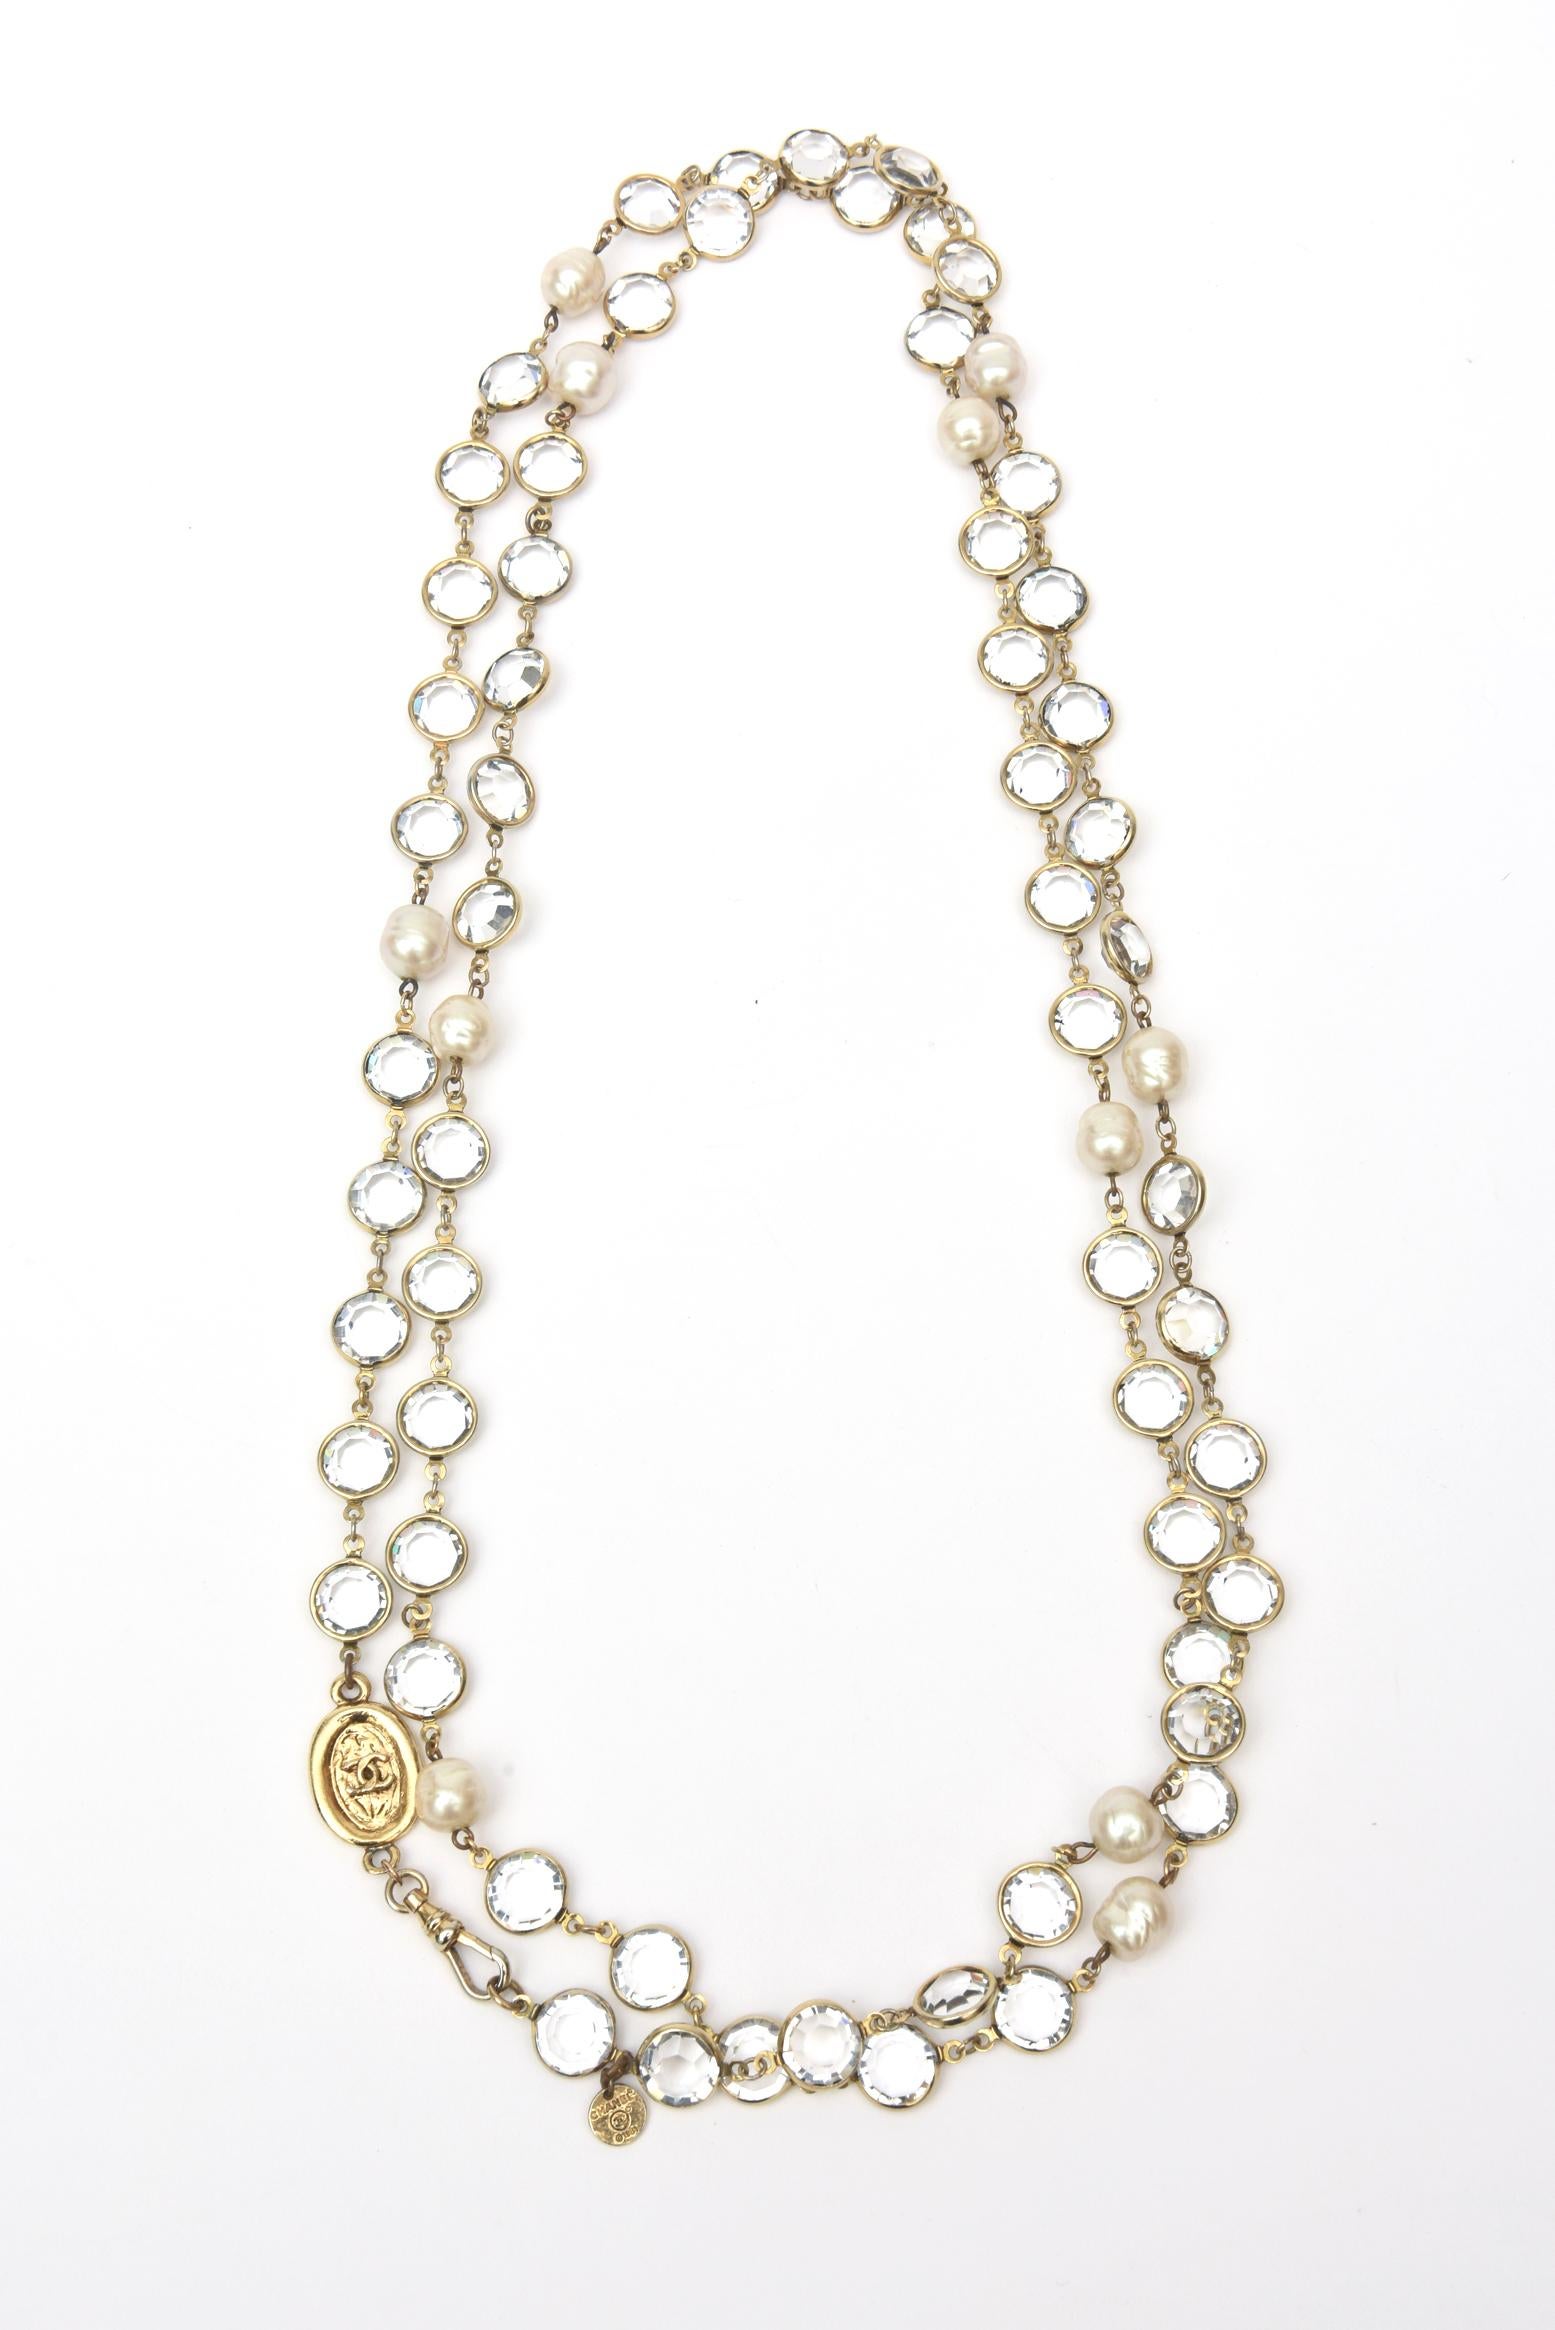 Ce long collier classique et polyvalent signé Chanel en fausses perles et cristaux biseautés peut être enroulé deux fois et même trois fois pour former un collier ras du cou. Il peut également être échelonné à différentes longueurs lorsqu'il est